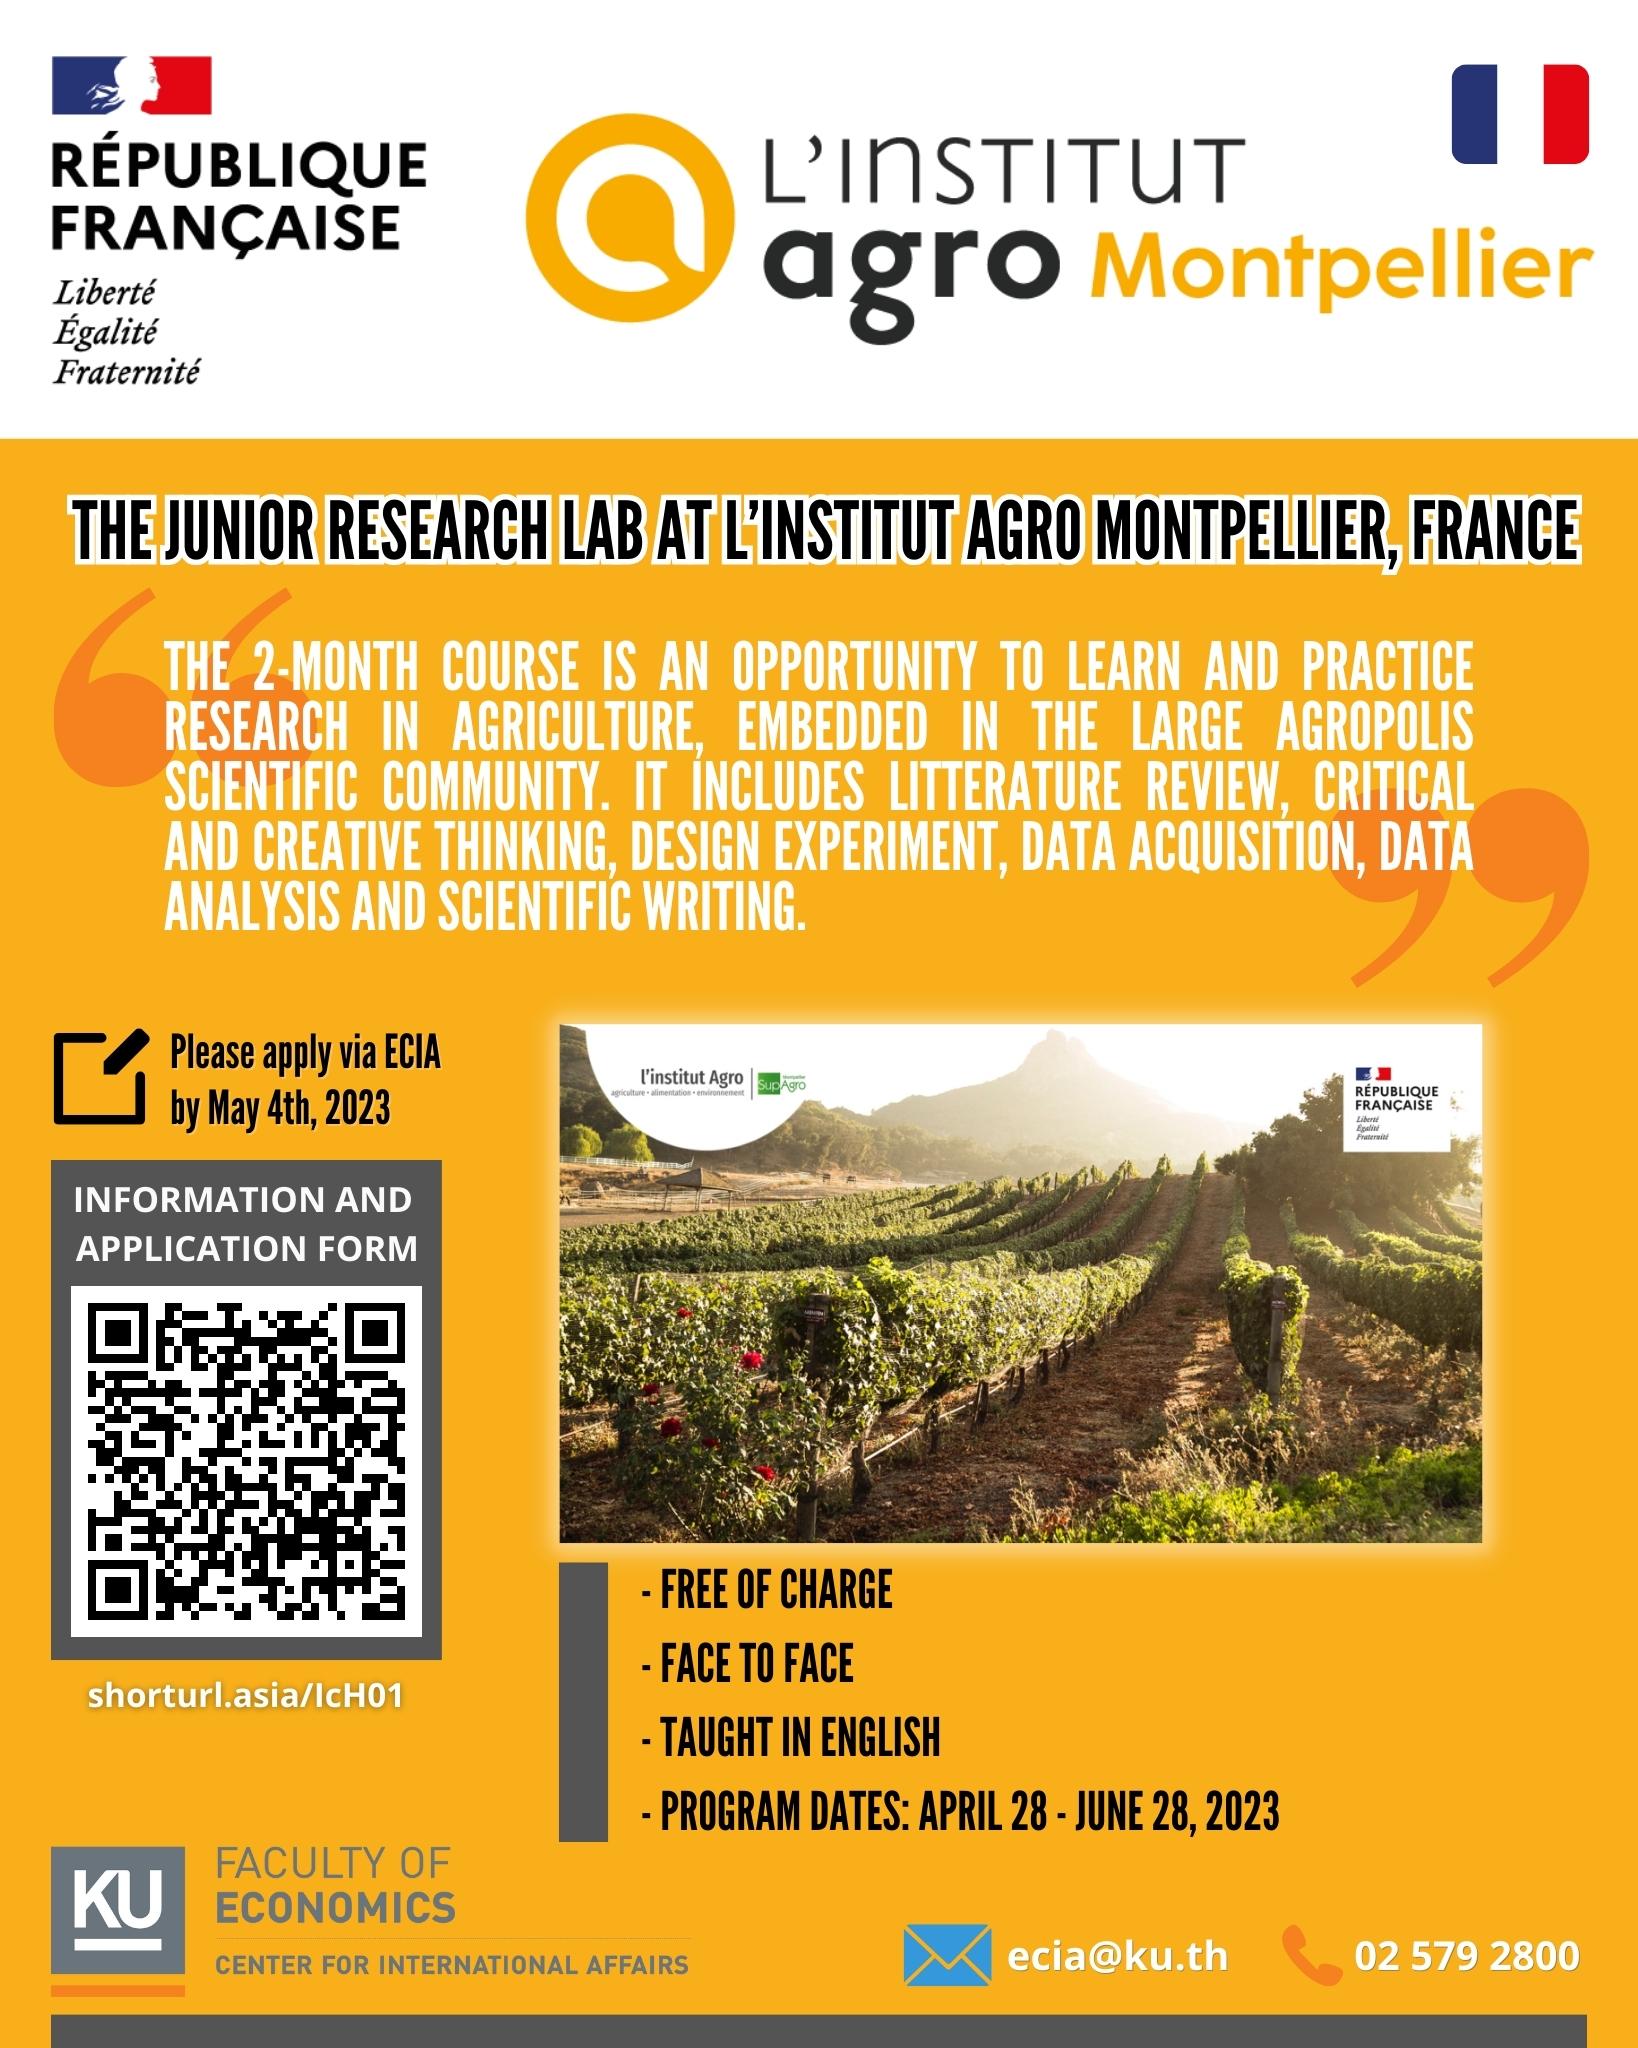 The Junior Research Lab at Institut Agro Montpellier (April 28 - June 28, 2023)